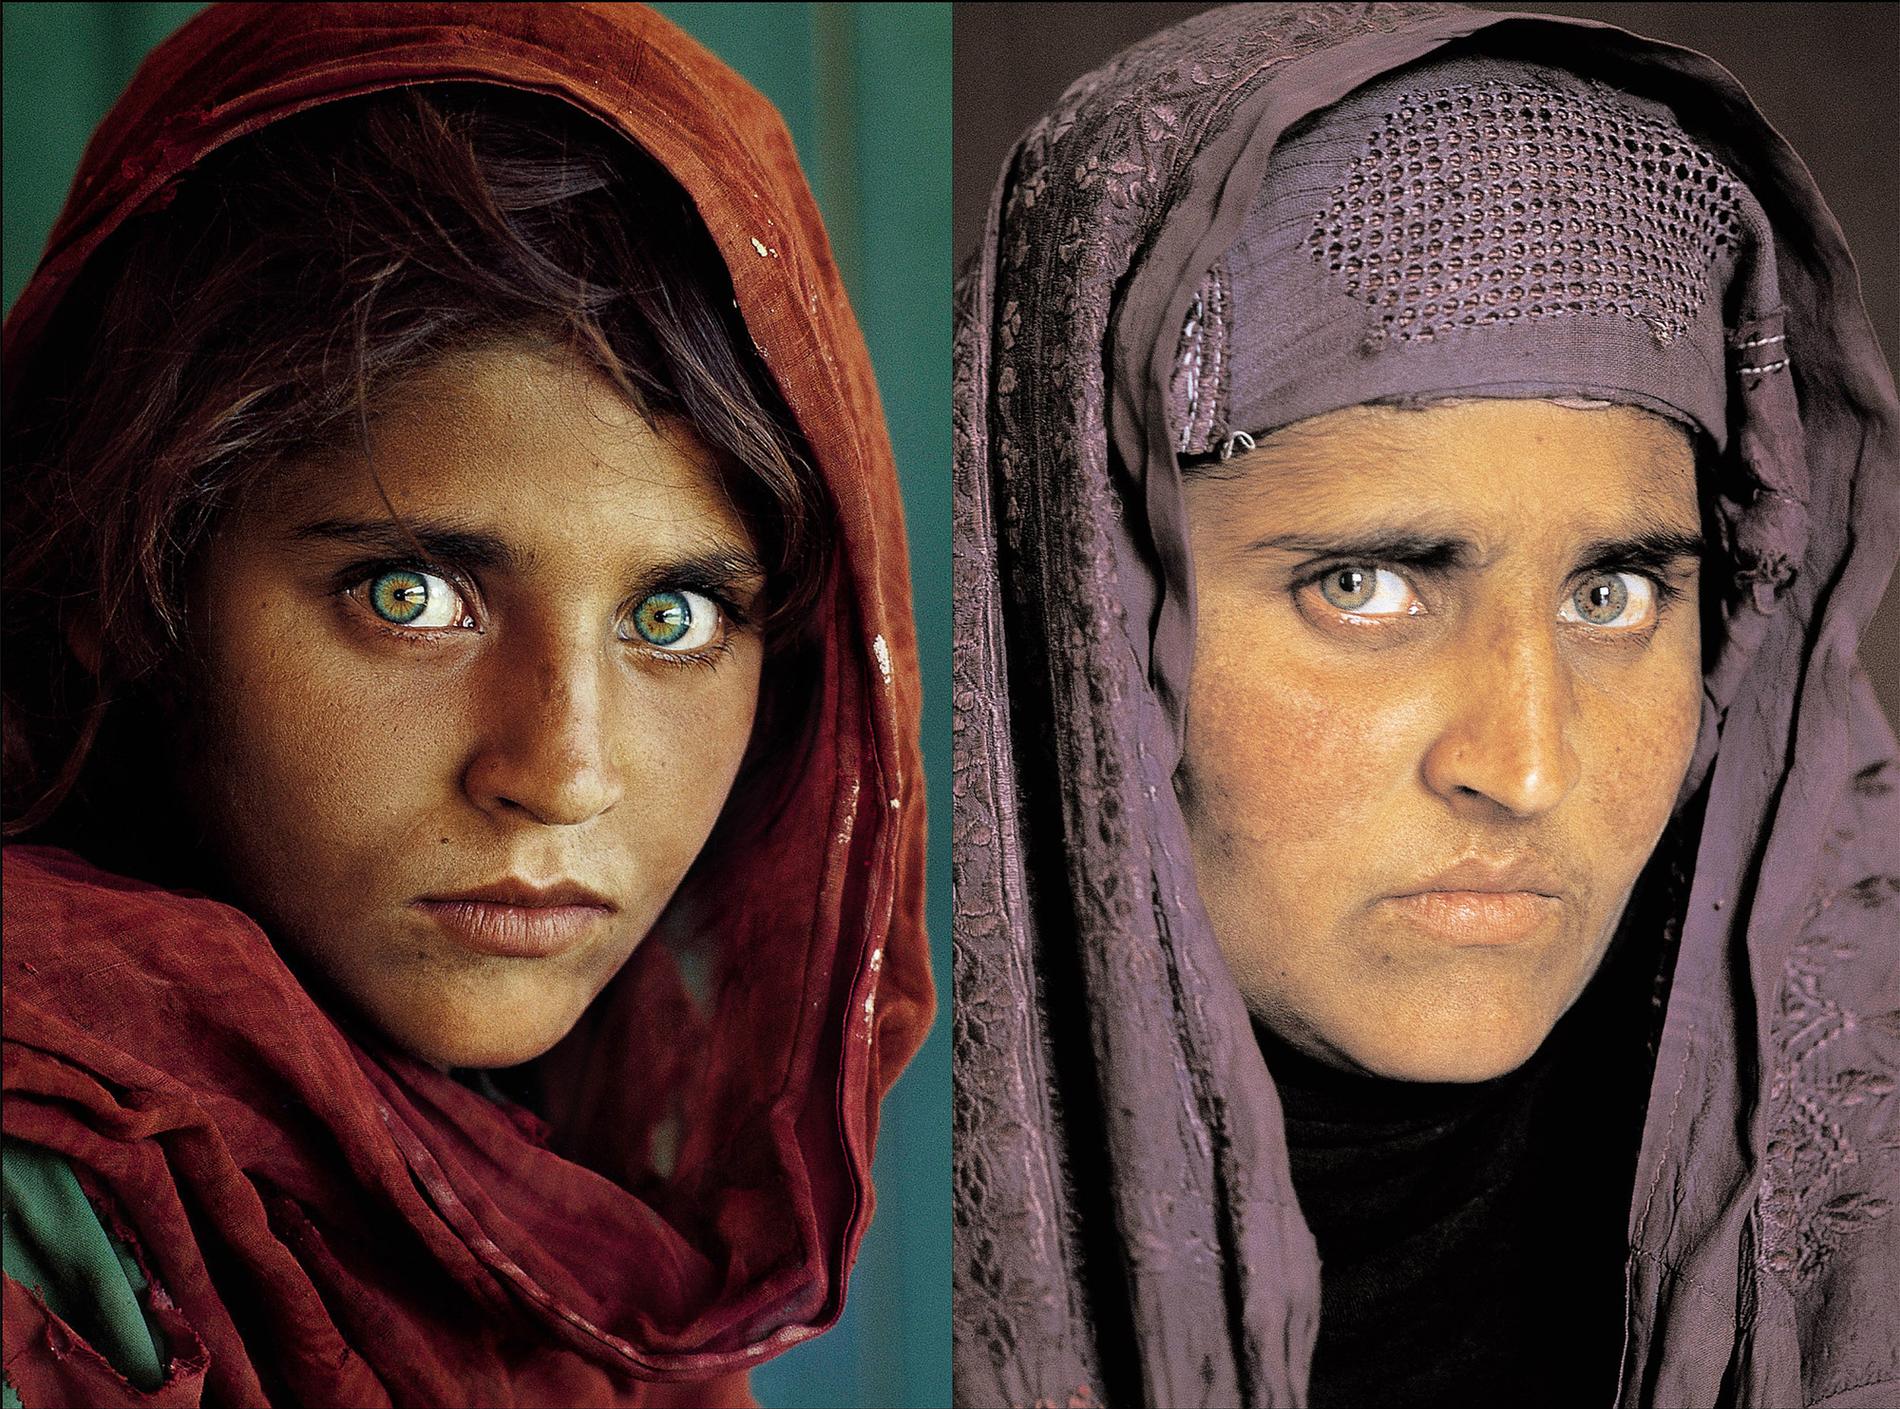 Flickan med de gröna ögonen, Sharbat Gula blev världskänd efter bilden på tidningen National Geographics omslag 1985. Nu har hon gripits i Pakistan.